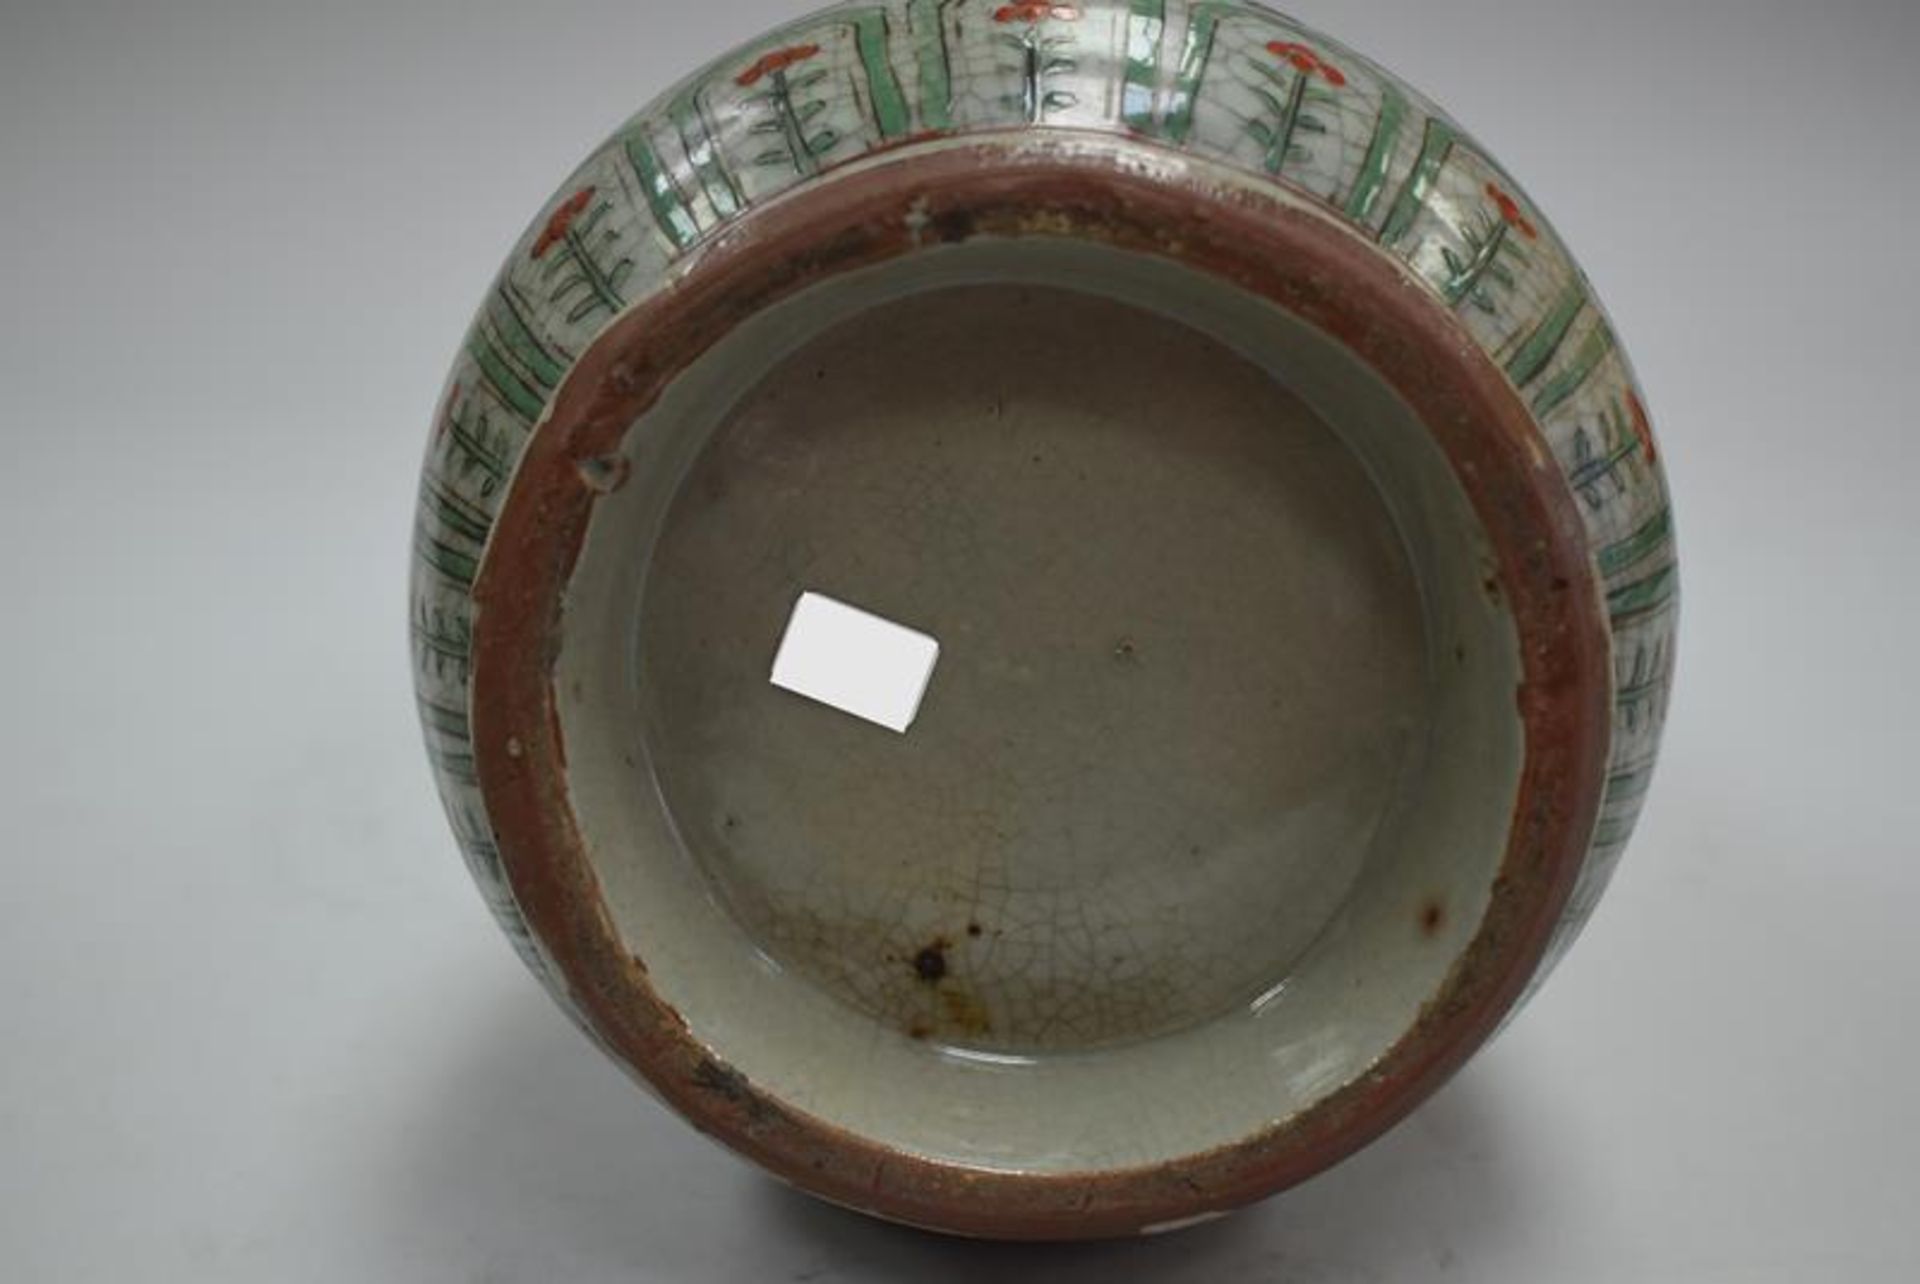 Chinesische Keramikvase um 1900Mindestpreis 160Bezeichnung Chinesische Keramikvase um 1900 - Bild 2 aus 2